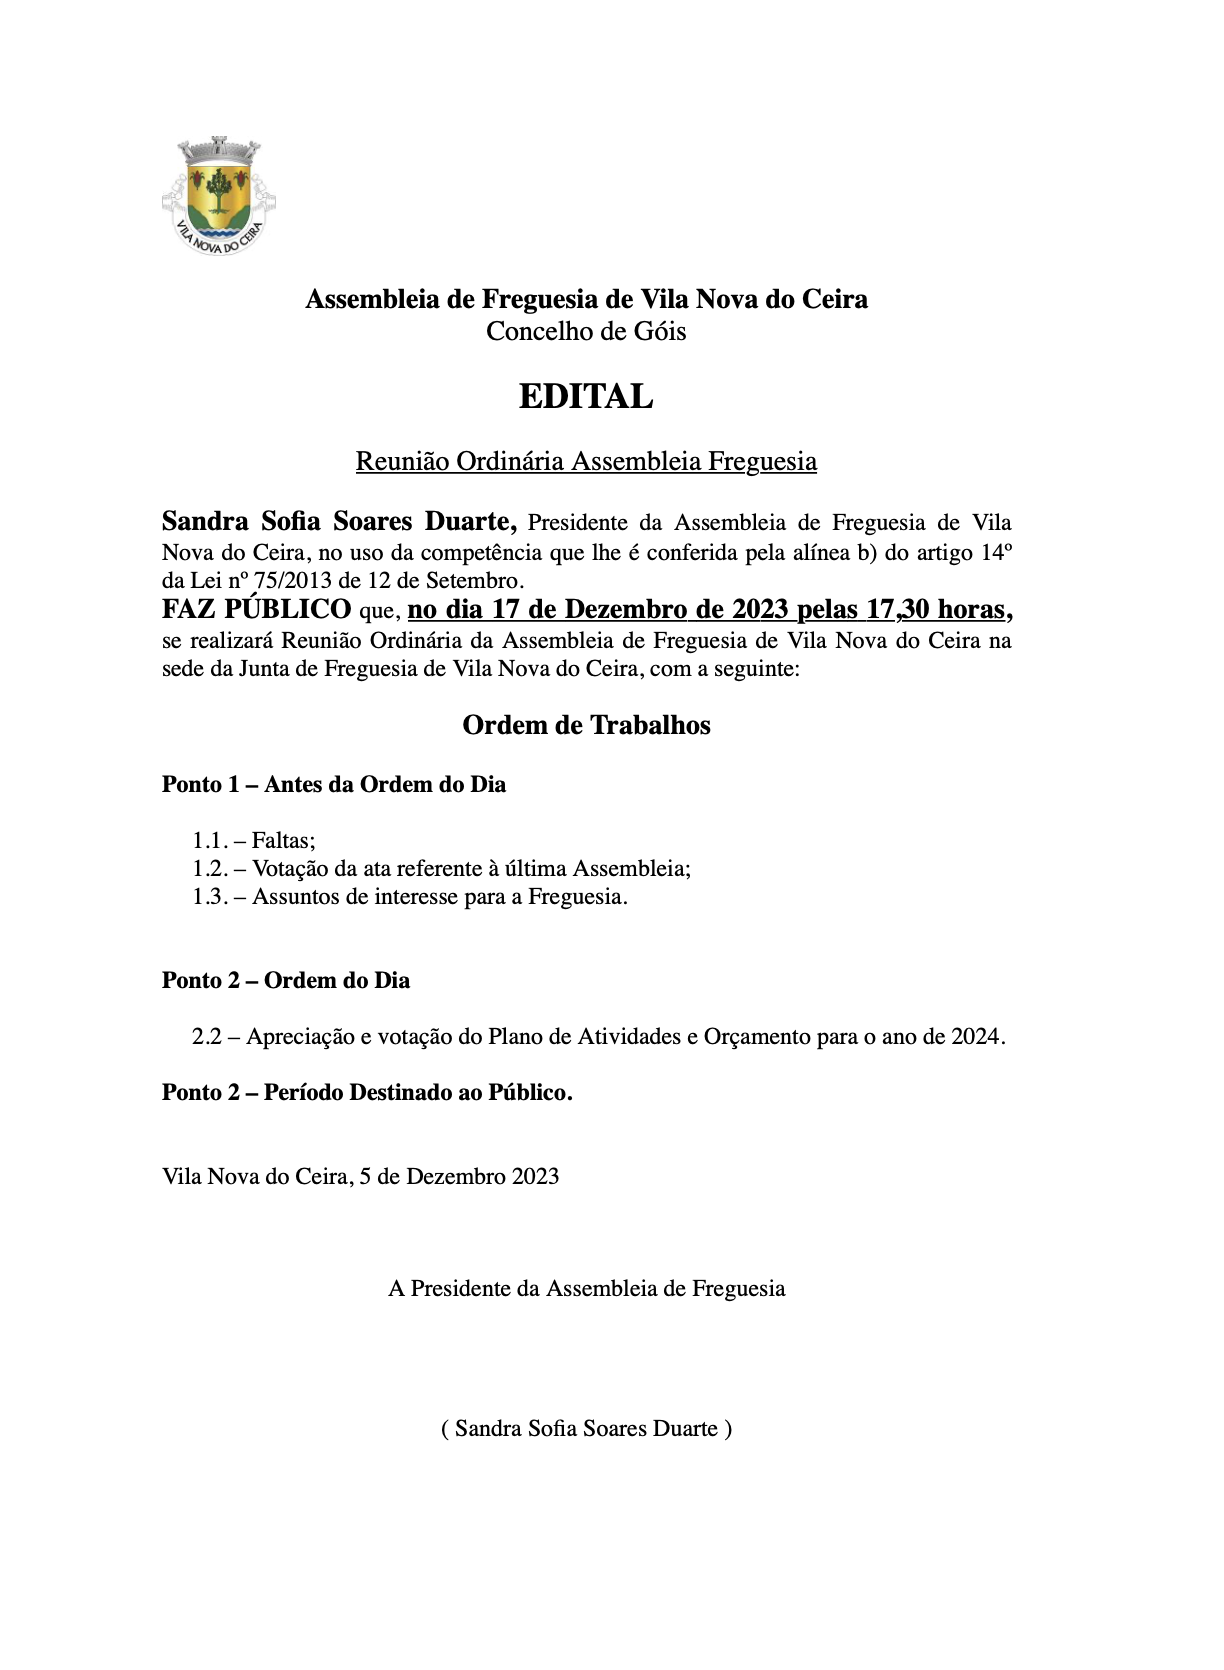 Notícia Edital - Assembleia de Freguesia - Reunião Ordinária de 17 de dezembro 2023